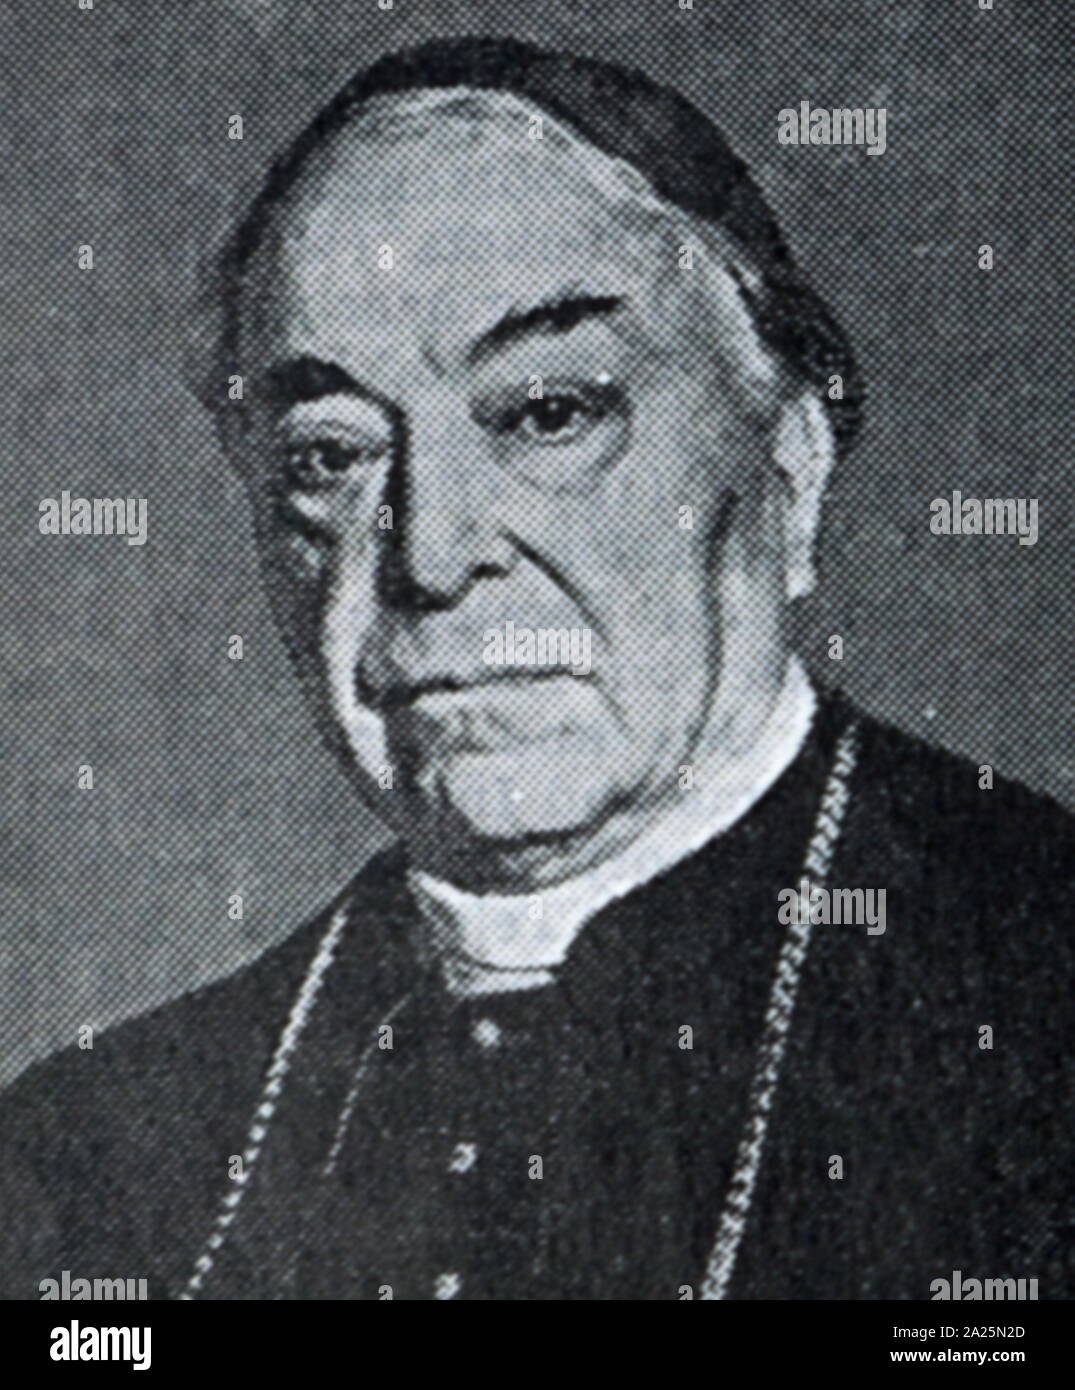 Foto von Pietro Gasparri. Pietro Gasparri, GCTE (1852-1934), ein römisch-katholischer Kardinal, Diplomat und Politiker in der Römischen Kurie. Stockfoto